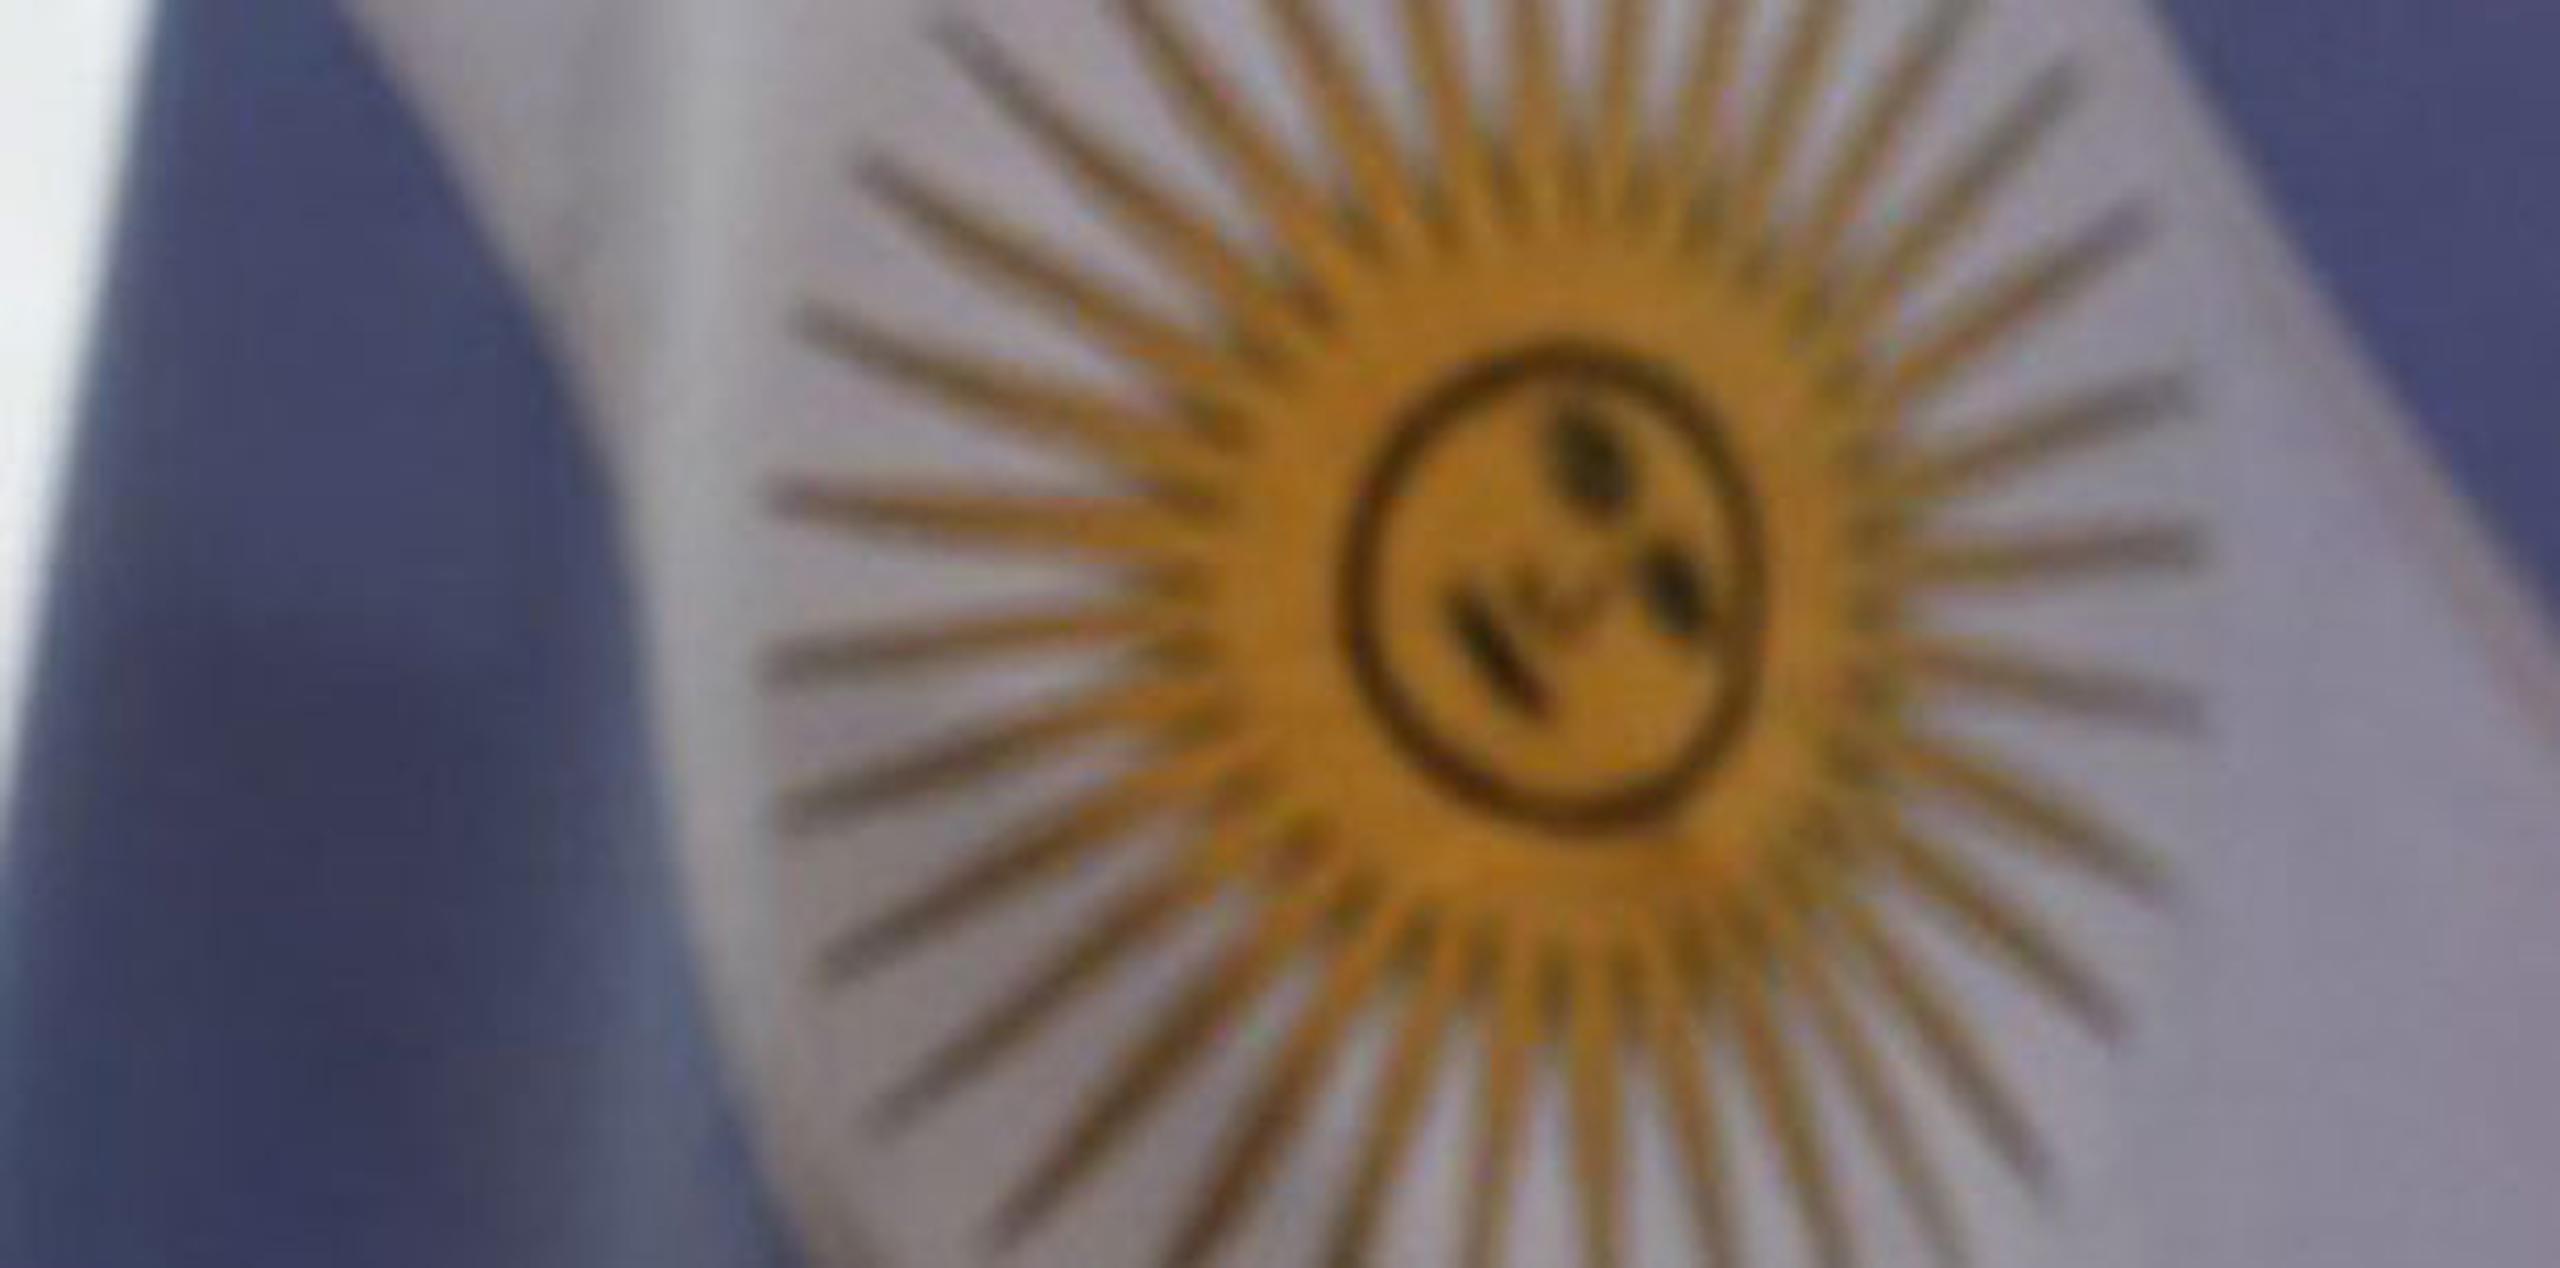 Al parecer, los detenidos habrían ingresado a Argentina el pasado 14 de noviembre y en los pasaportes que utilizaron tenían sus fotos. (Archivo)